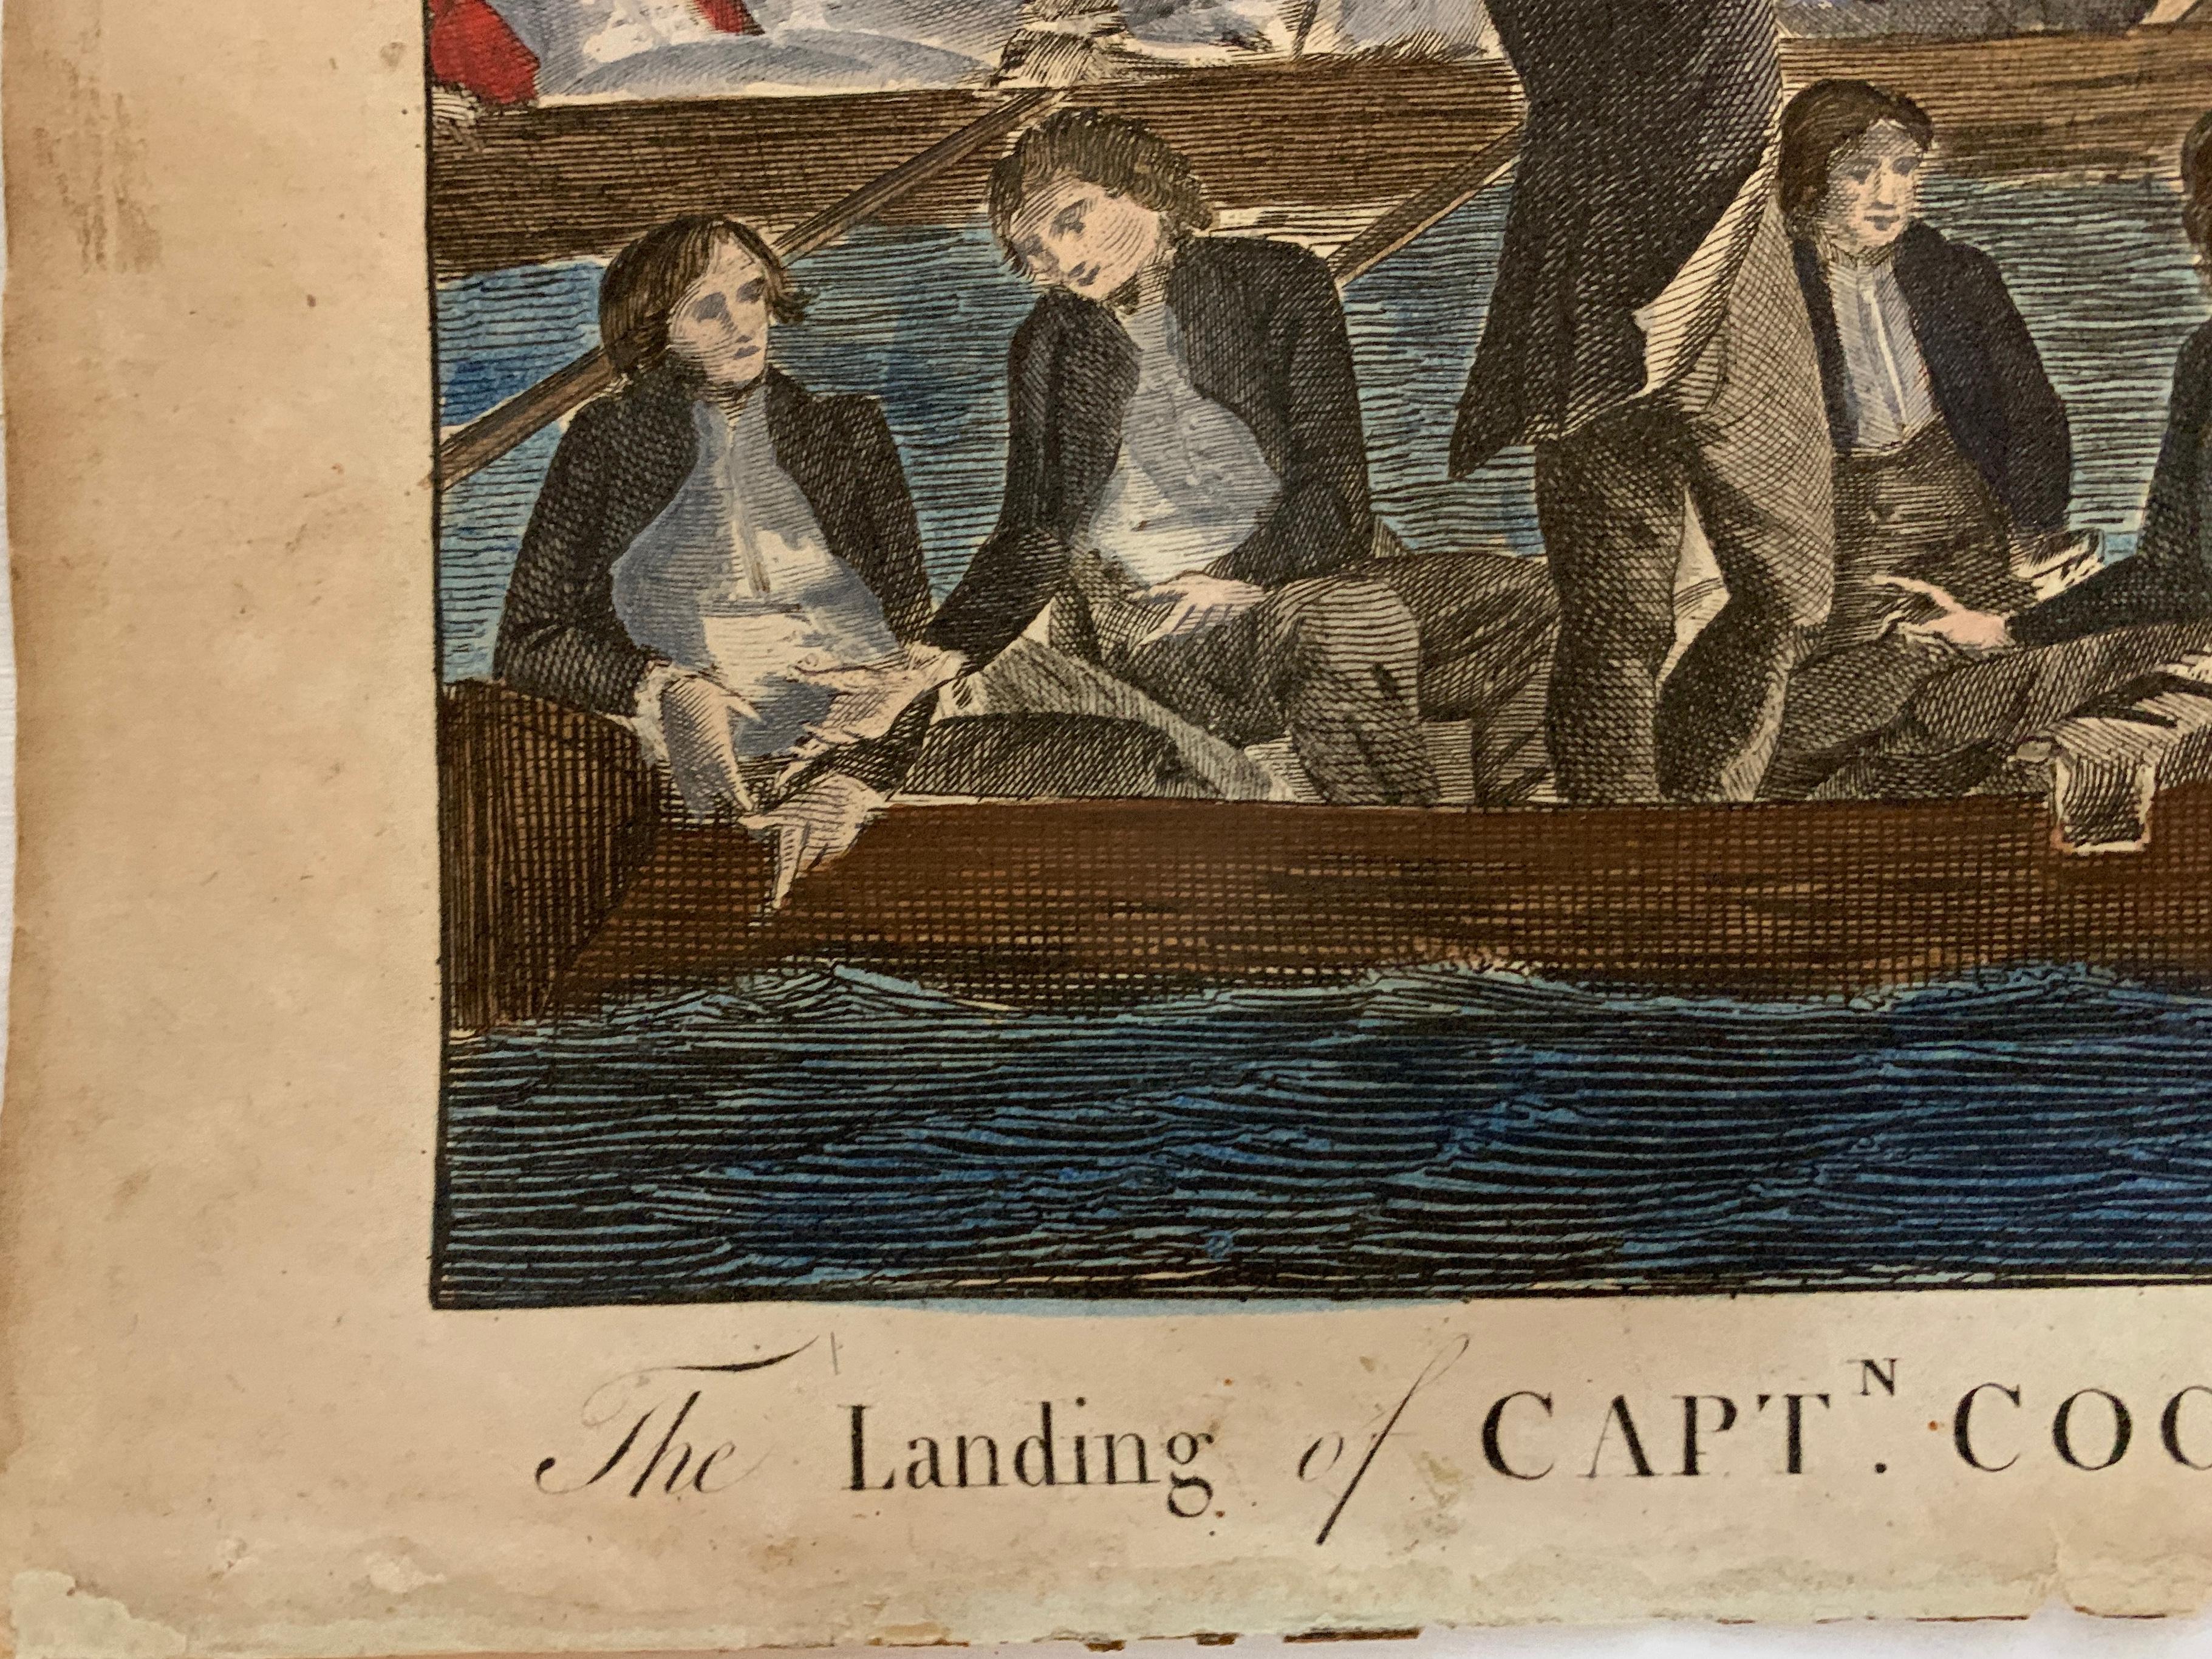 18th century captain